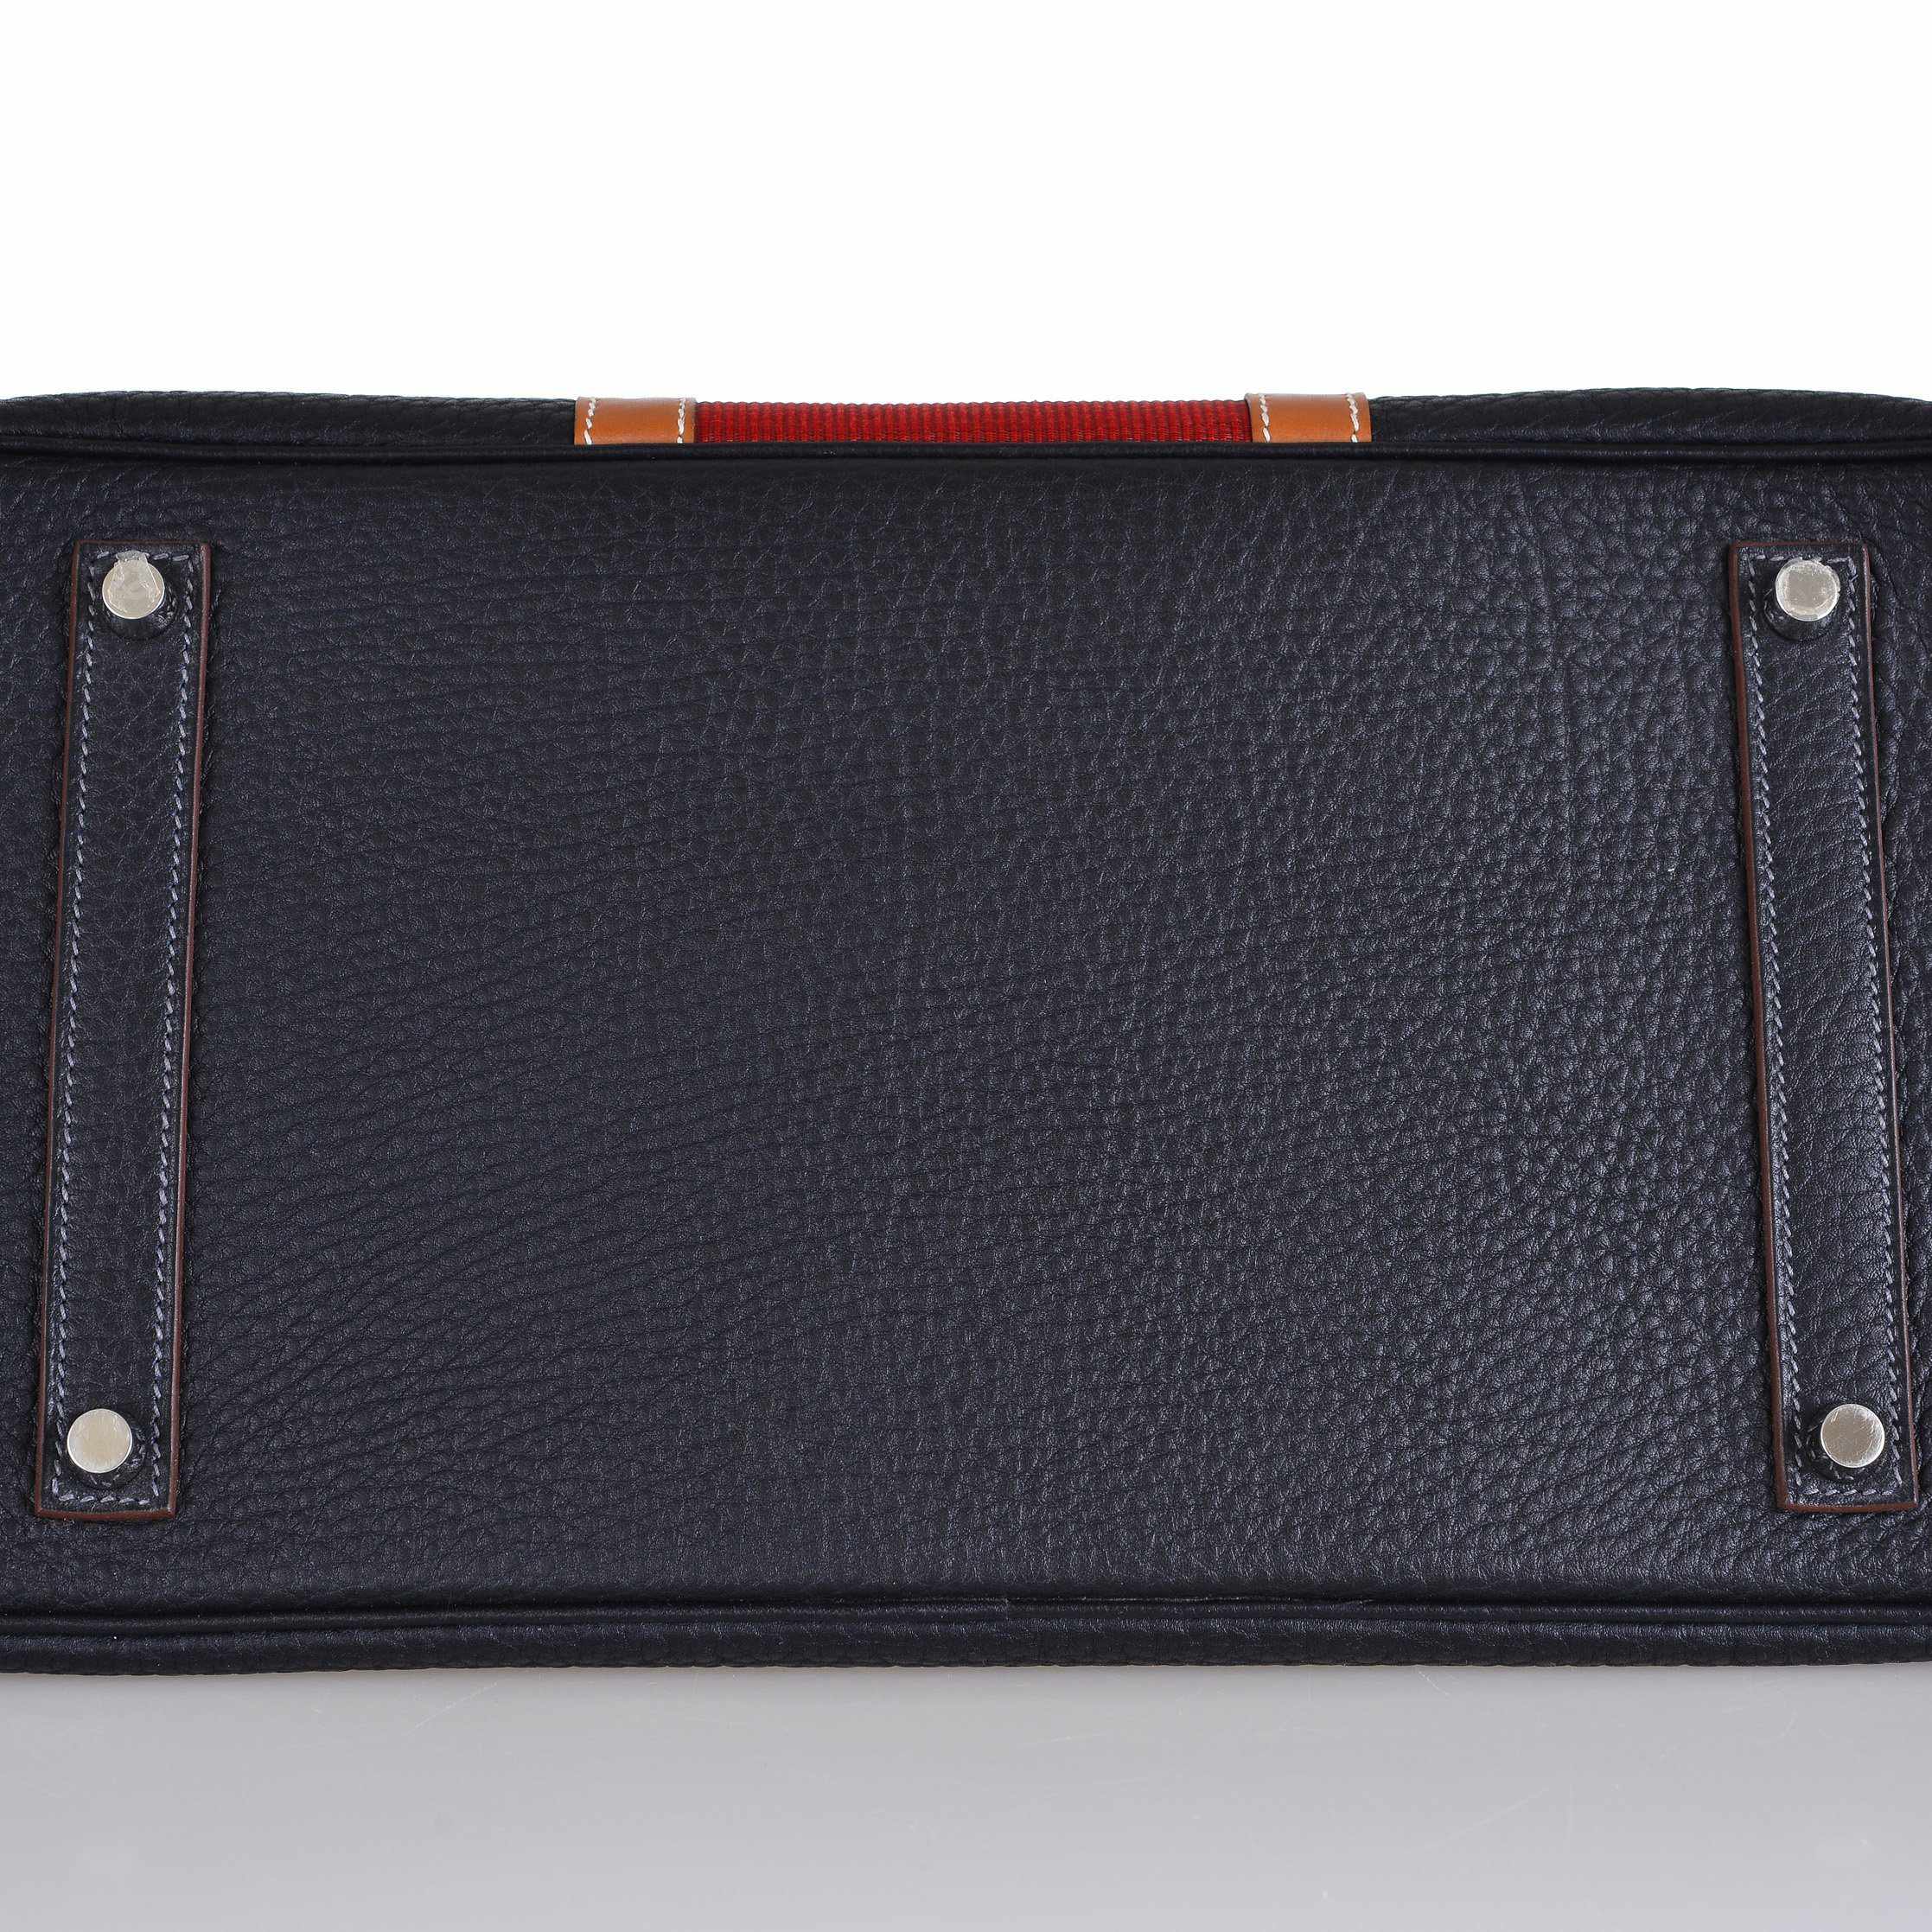 Hermès Club Birkin 35 Indigo Fjord, Barenia Leather & Crinoline Palladium Hardware - 2013, Q Square